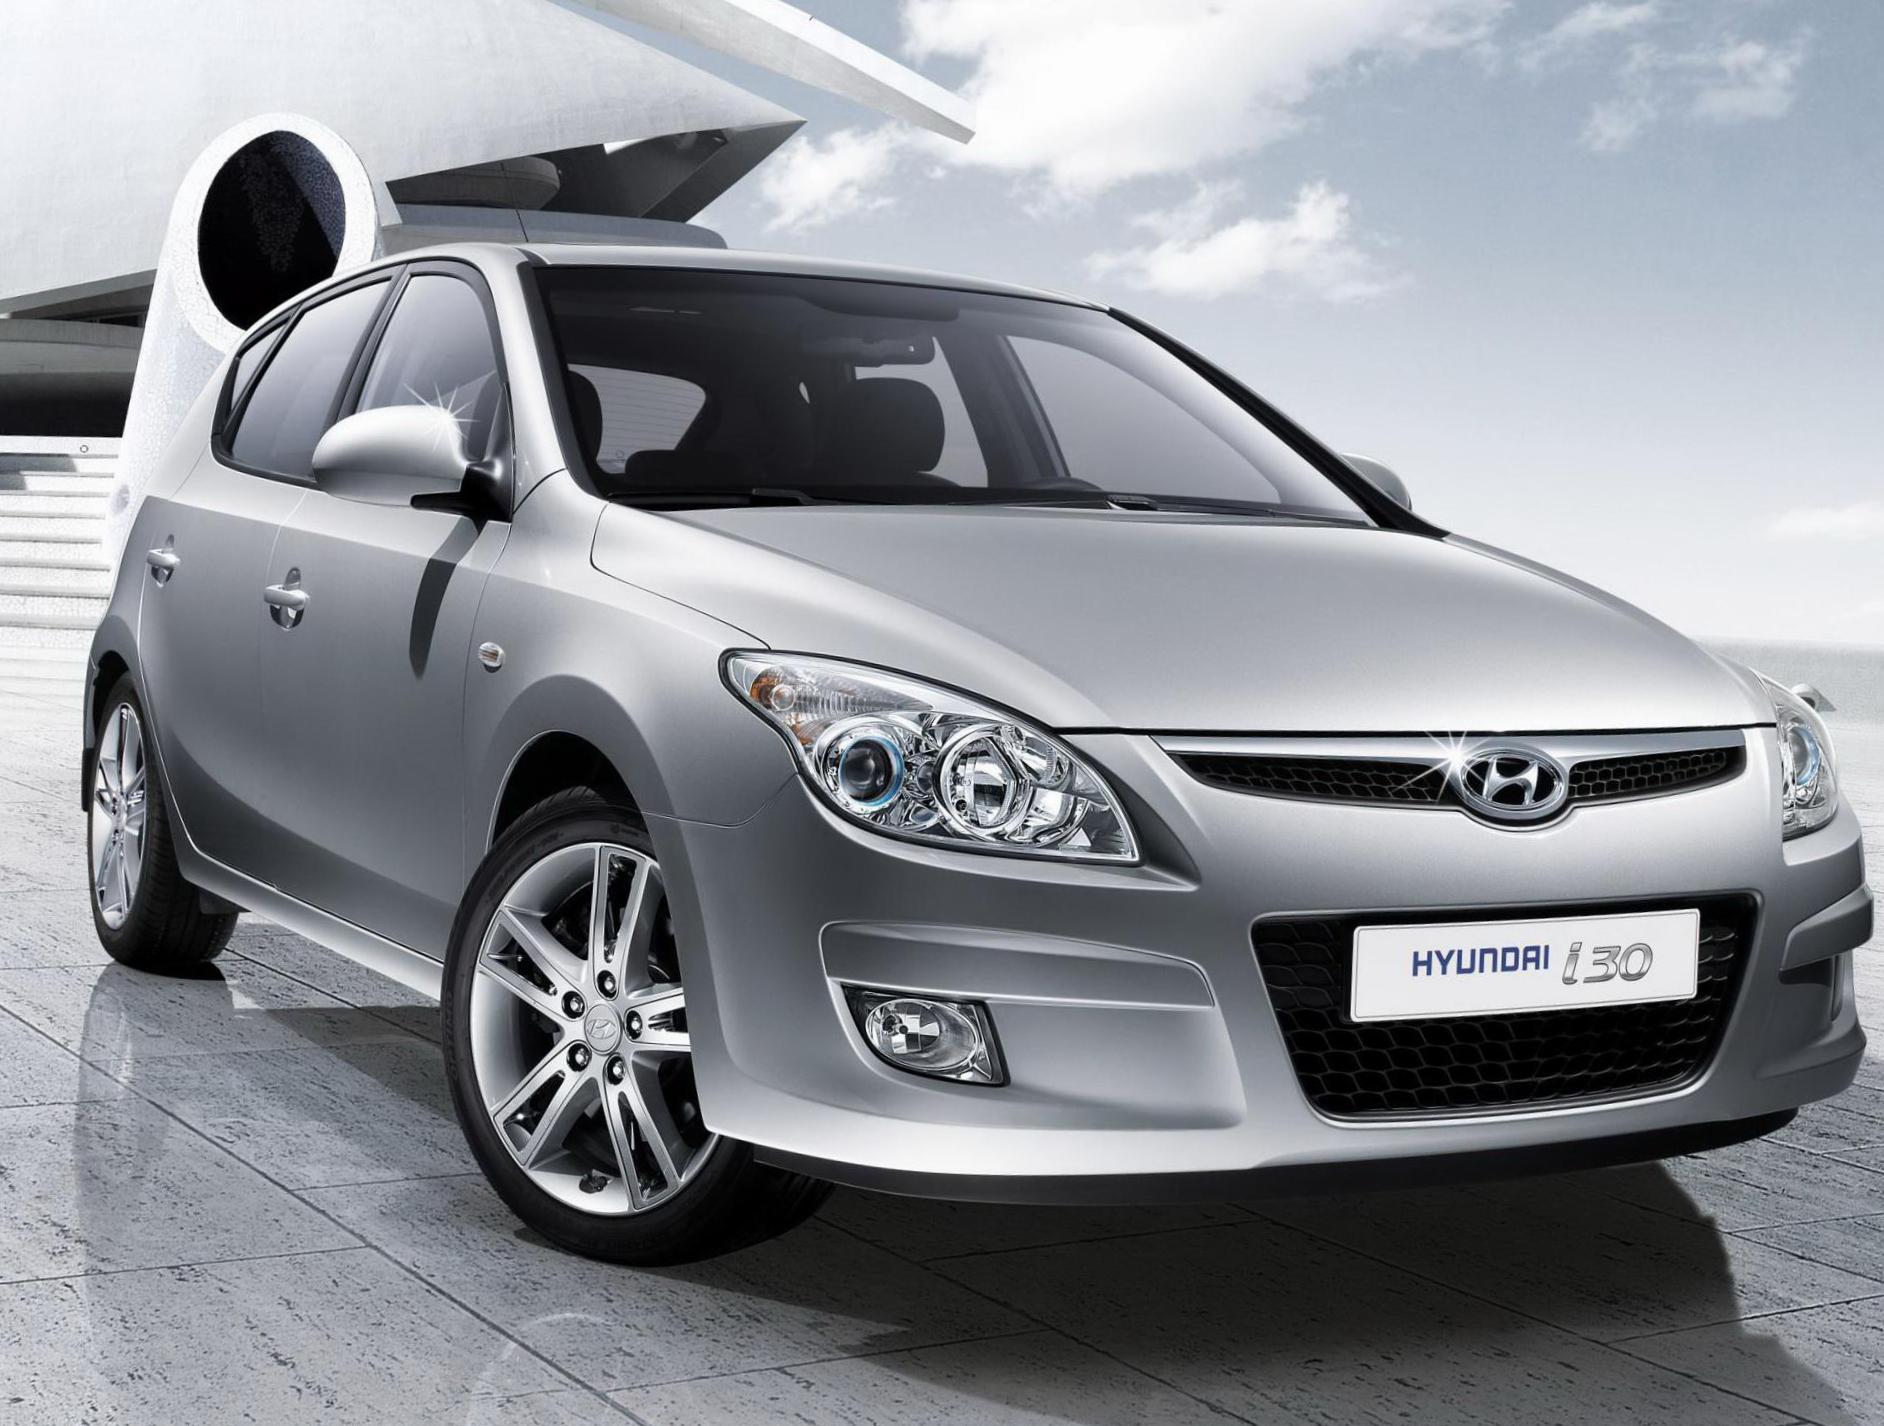 i30 Hyundai reviews 2011